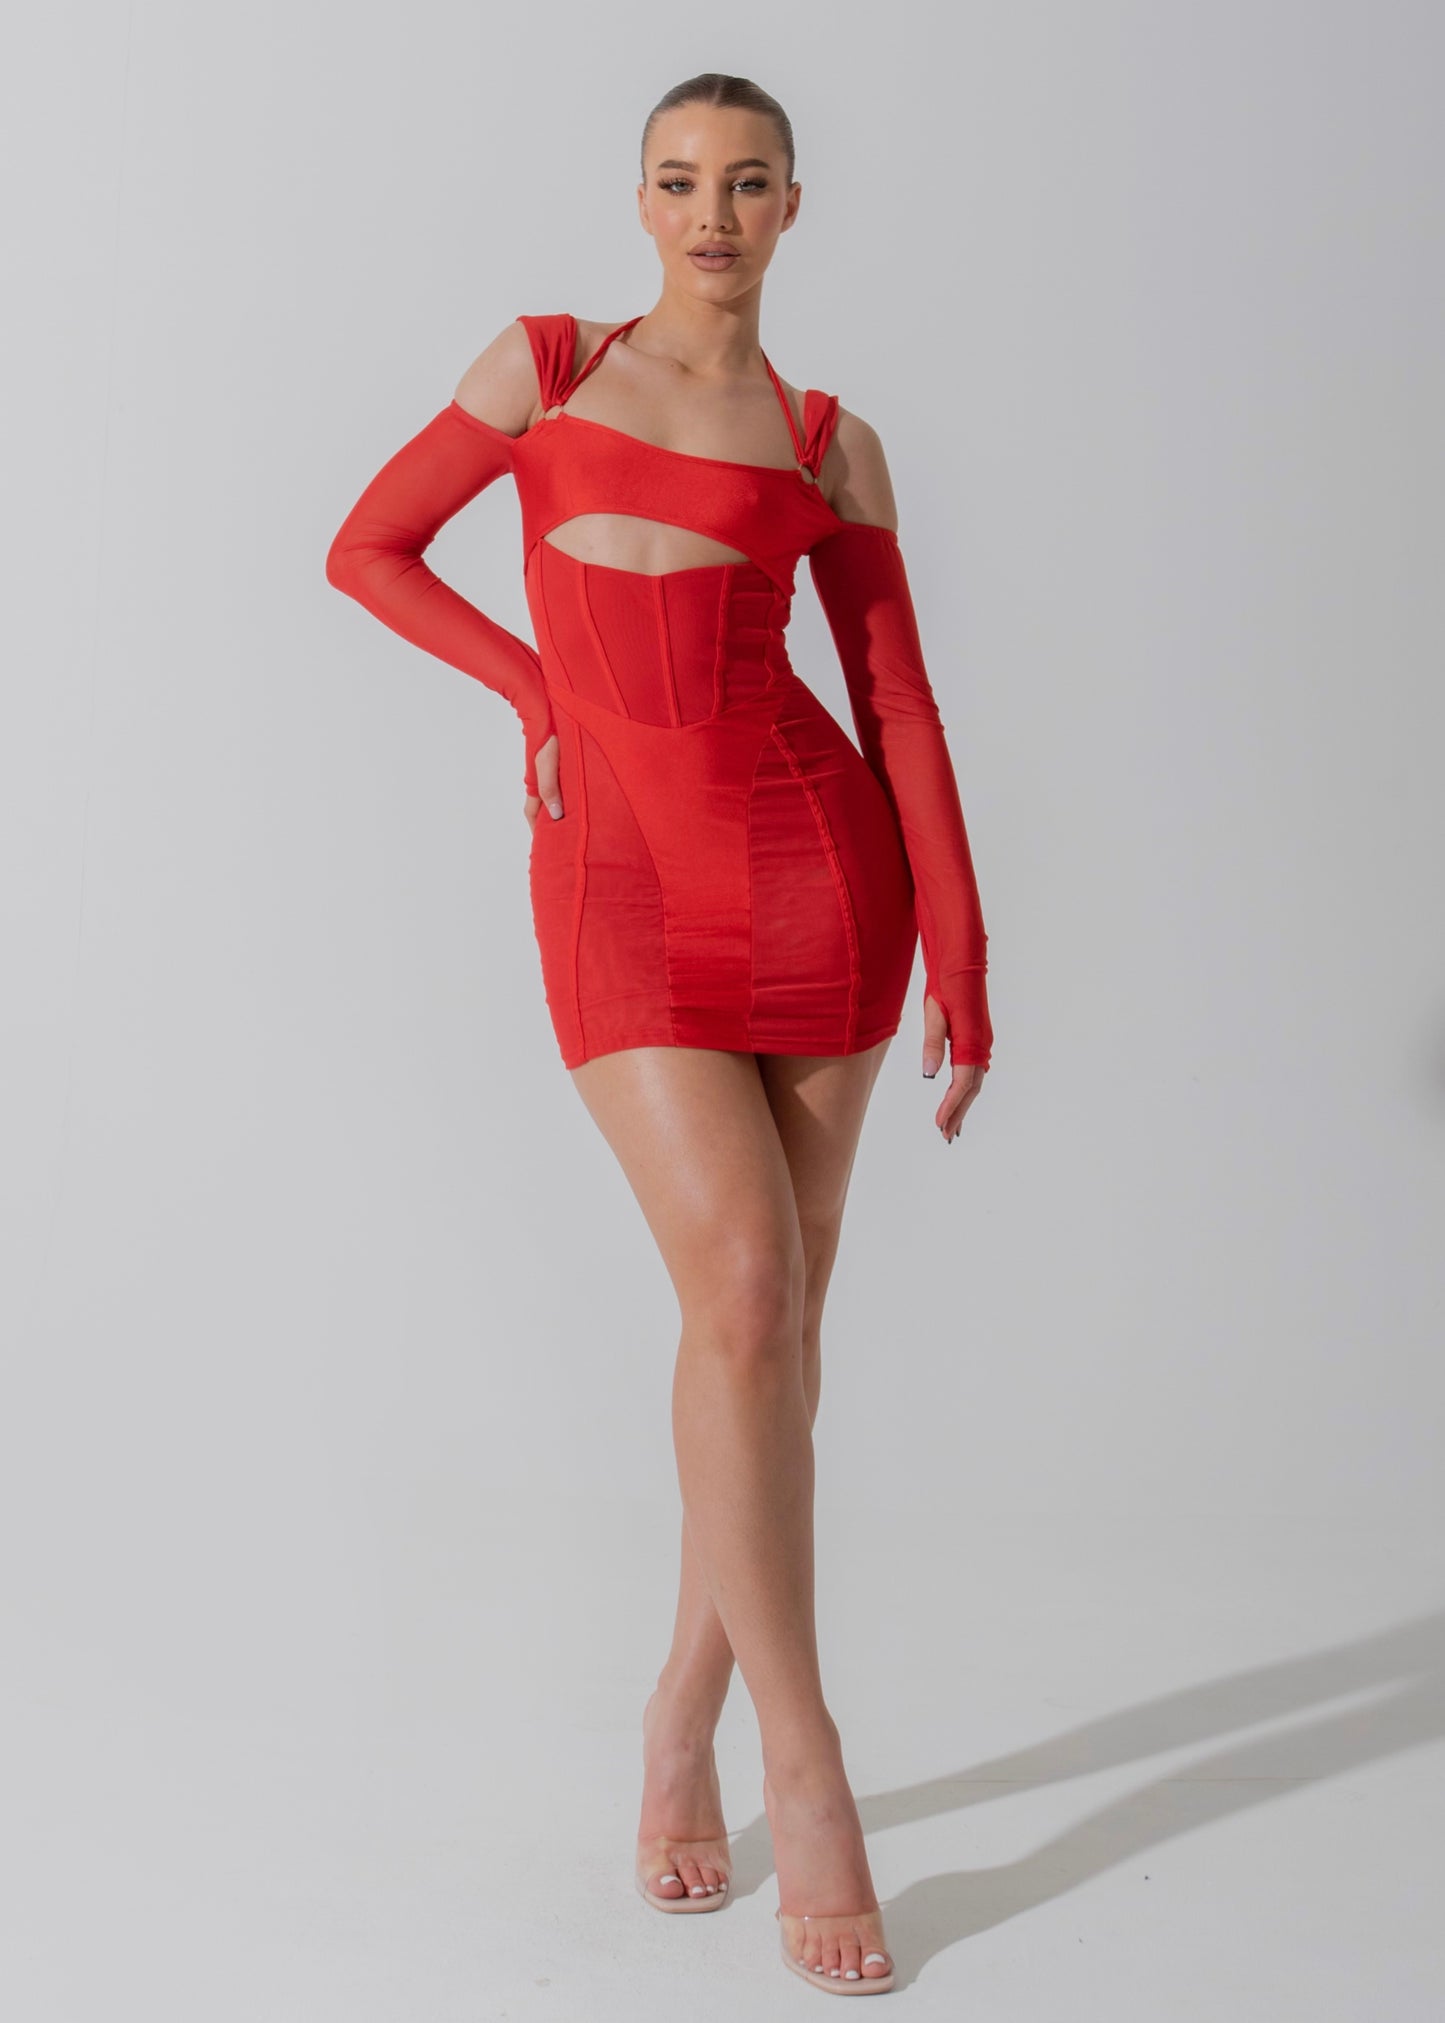 AILSA - Red Mesh Mini Dress